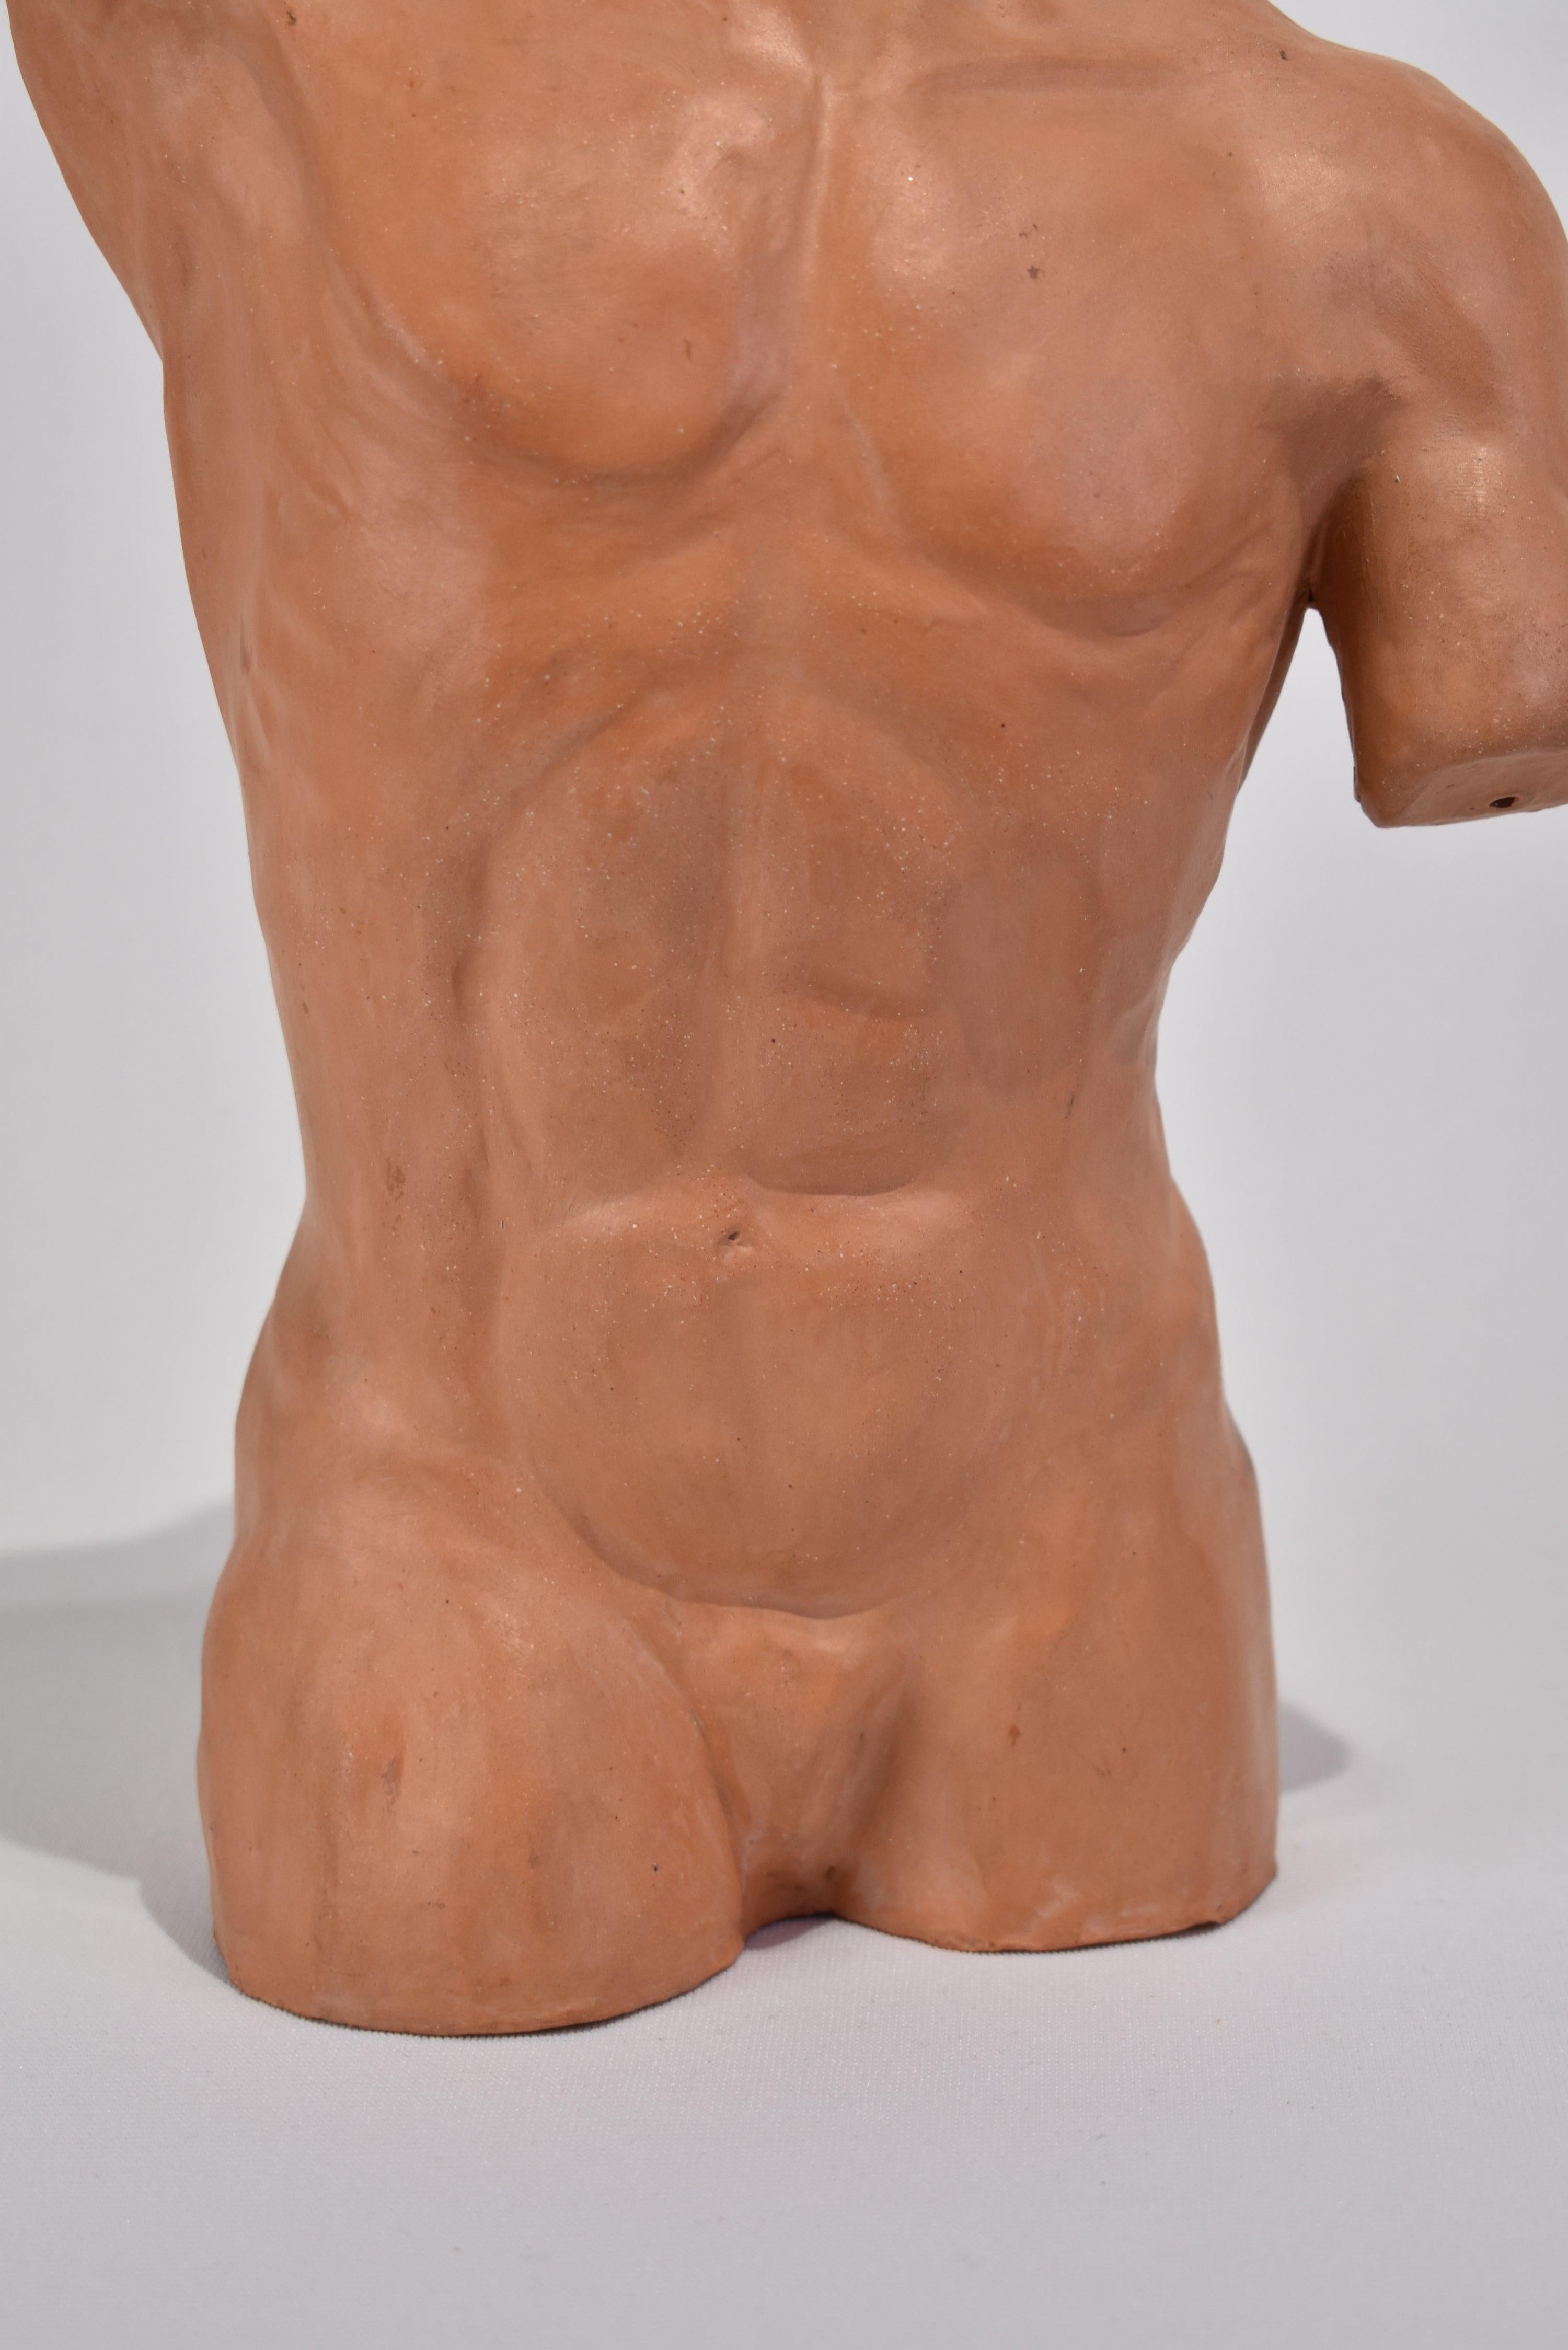 20th Century Male Torso Sculpture